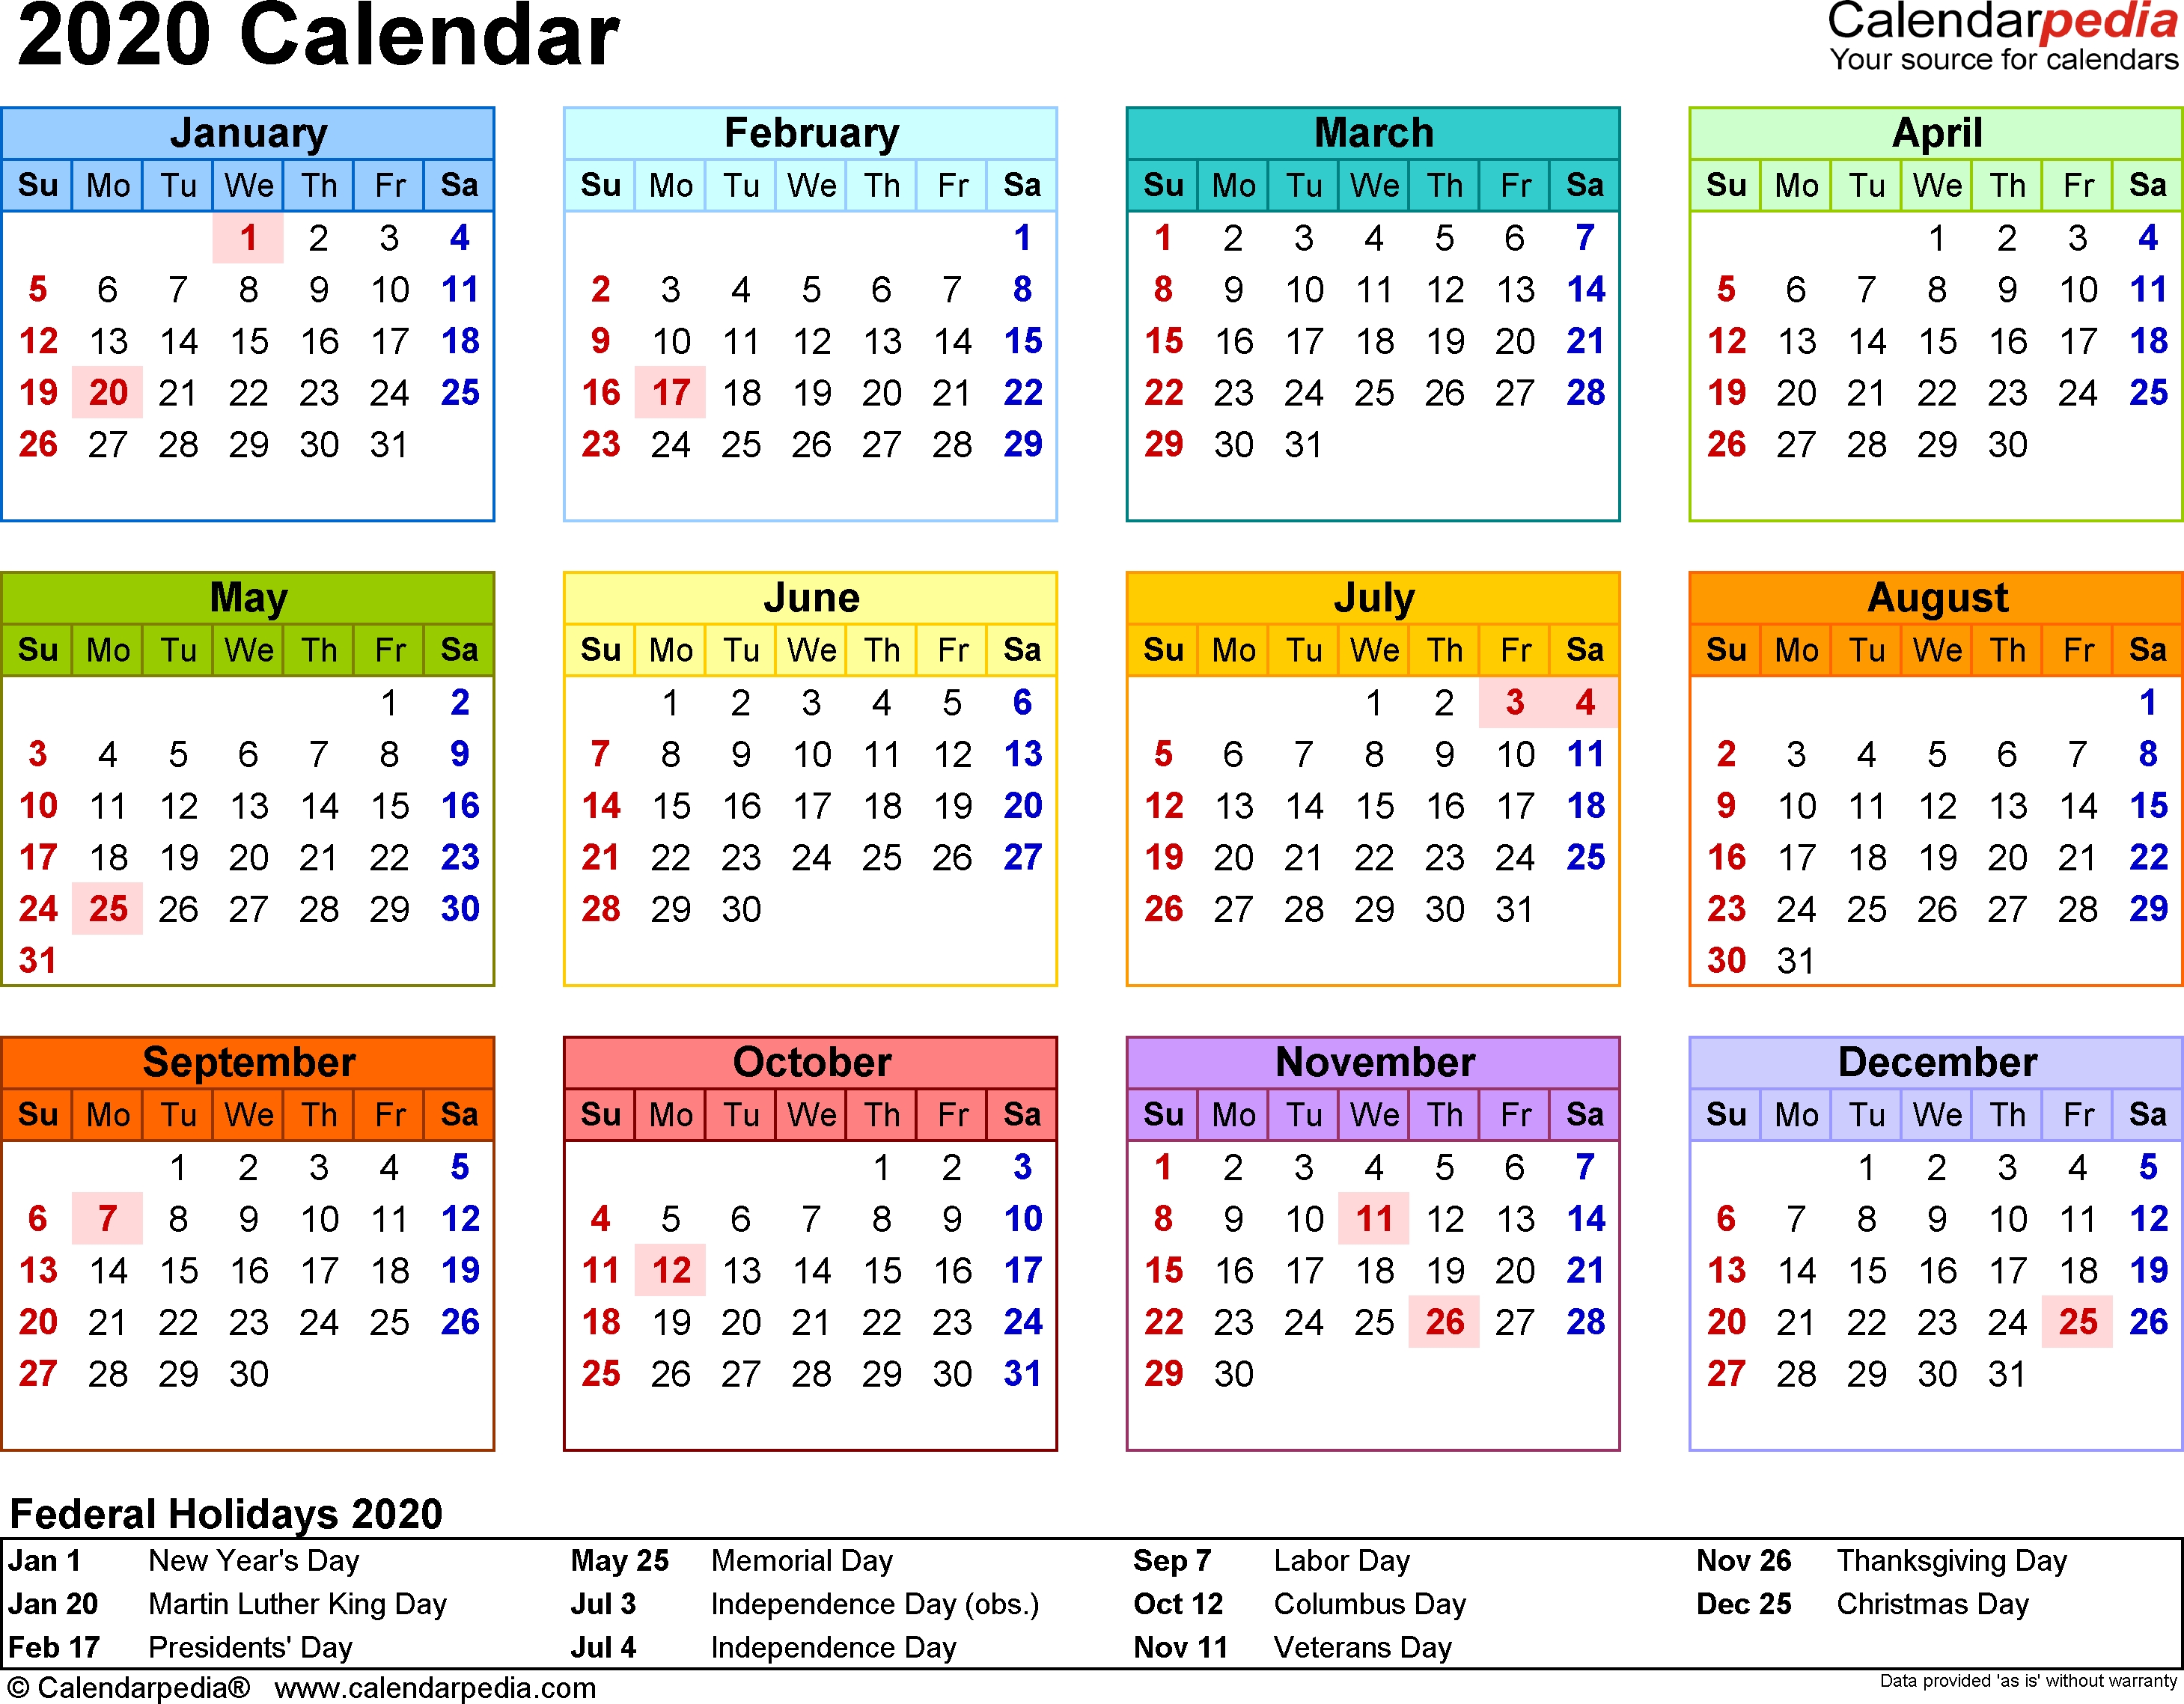 2020 Calendar - 17 Free Printable Word Calendar Templates throughout 2020 Calendar